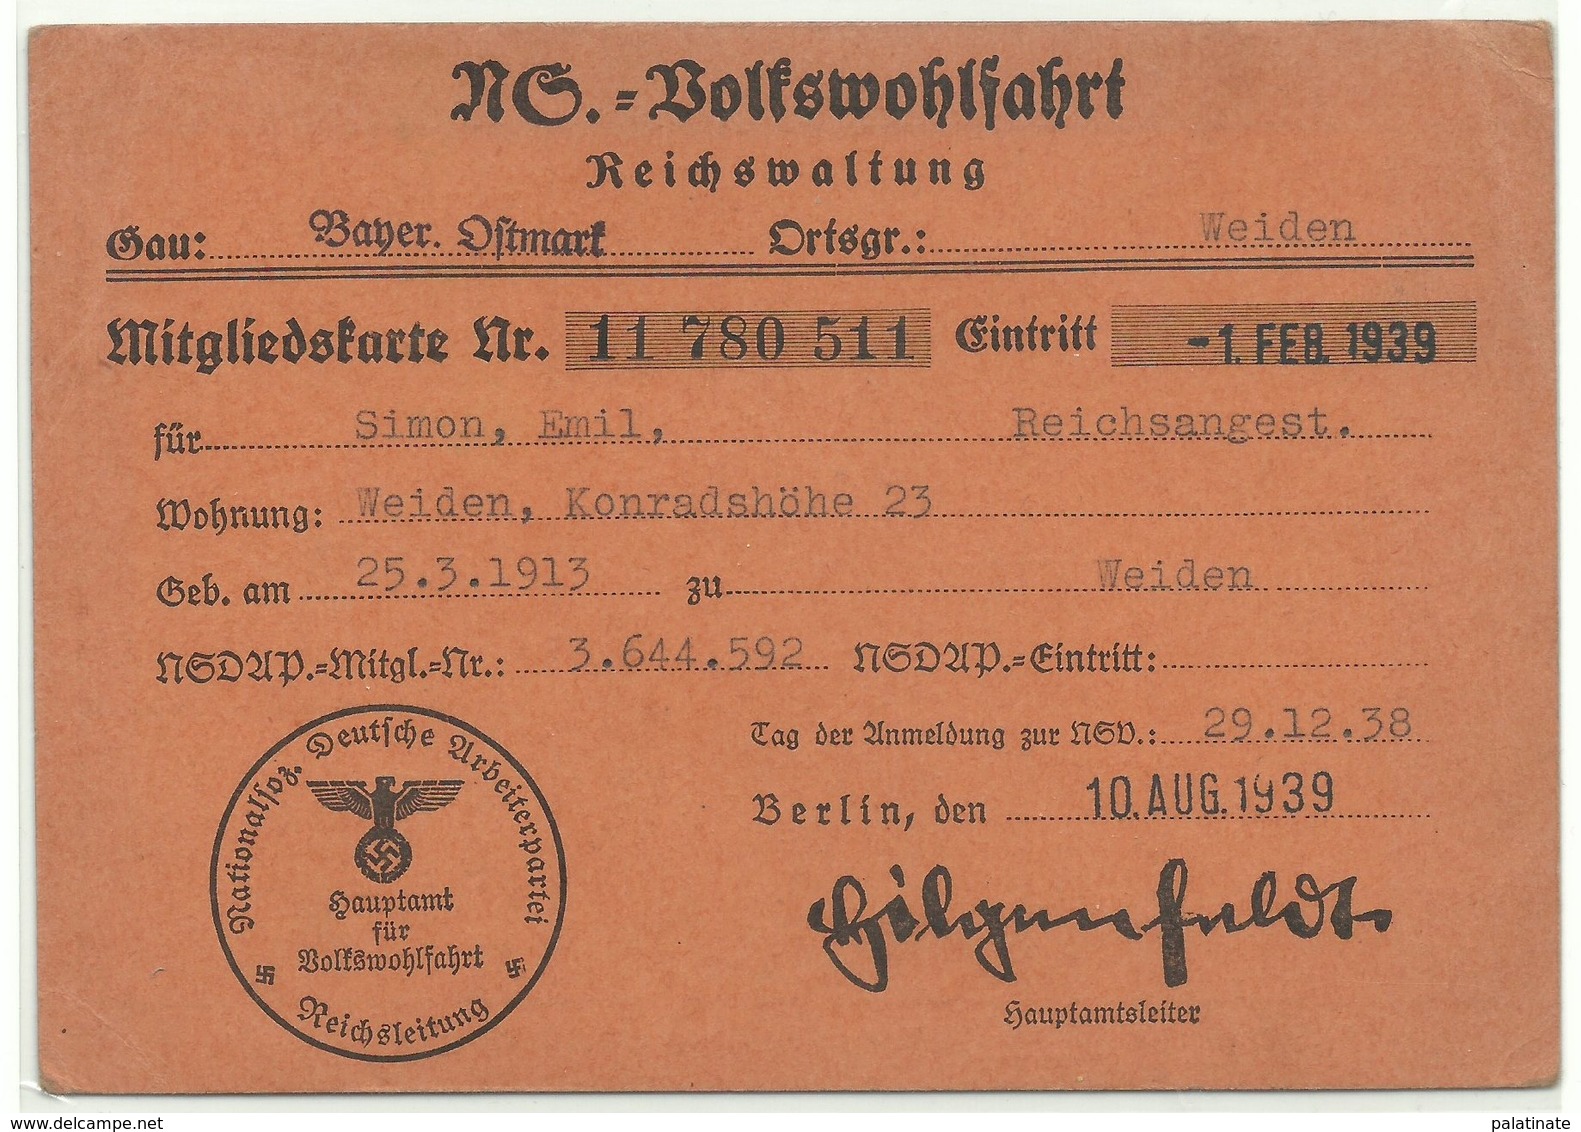 NS-Volkswohlfahrt Mitgliedskarte Weiden Oberpfalz 1939 - Documentos Históricos